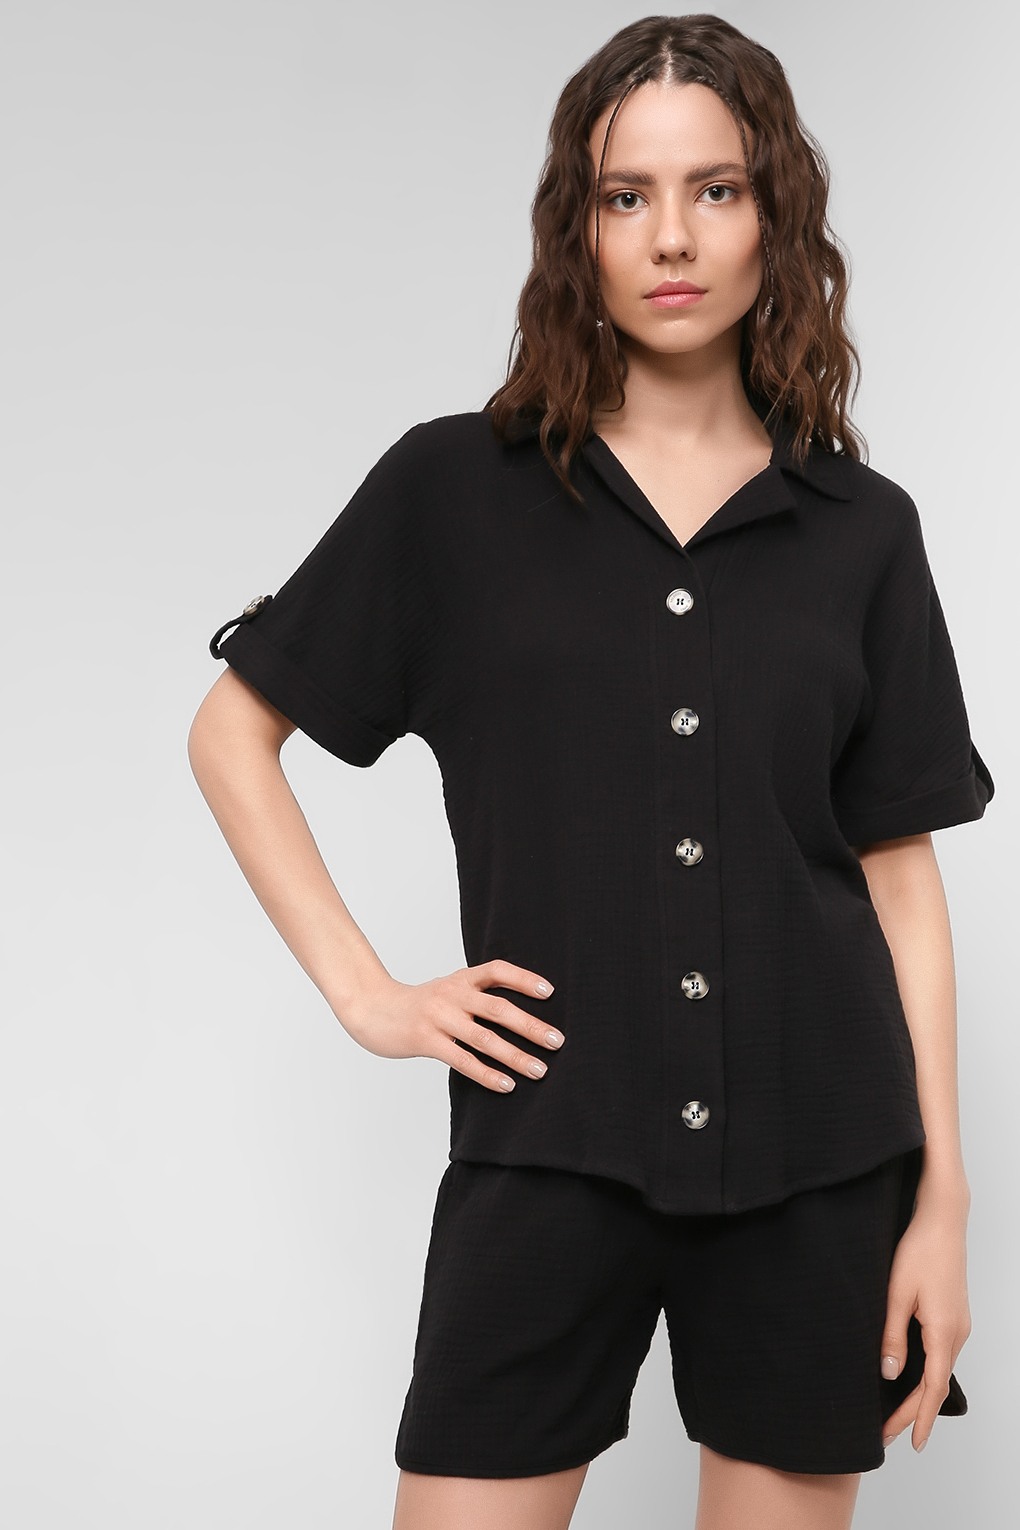 Рубашка женская Belucci BL22043396-001 черная XS